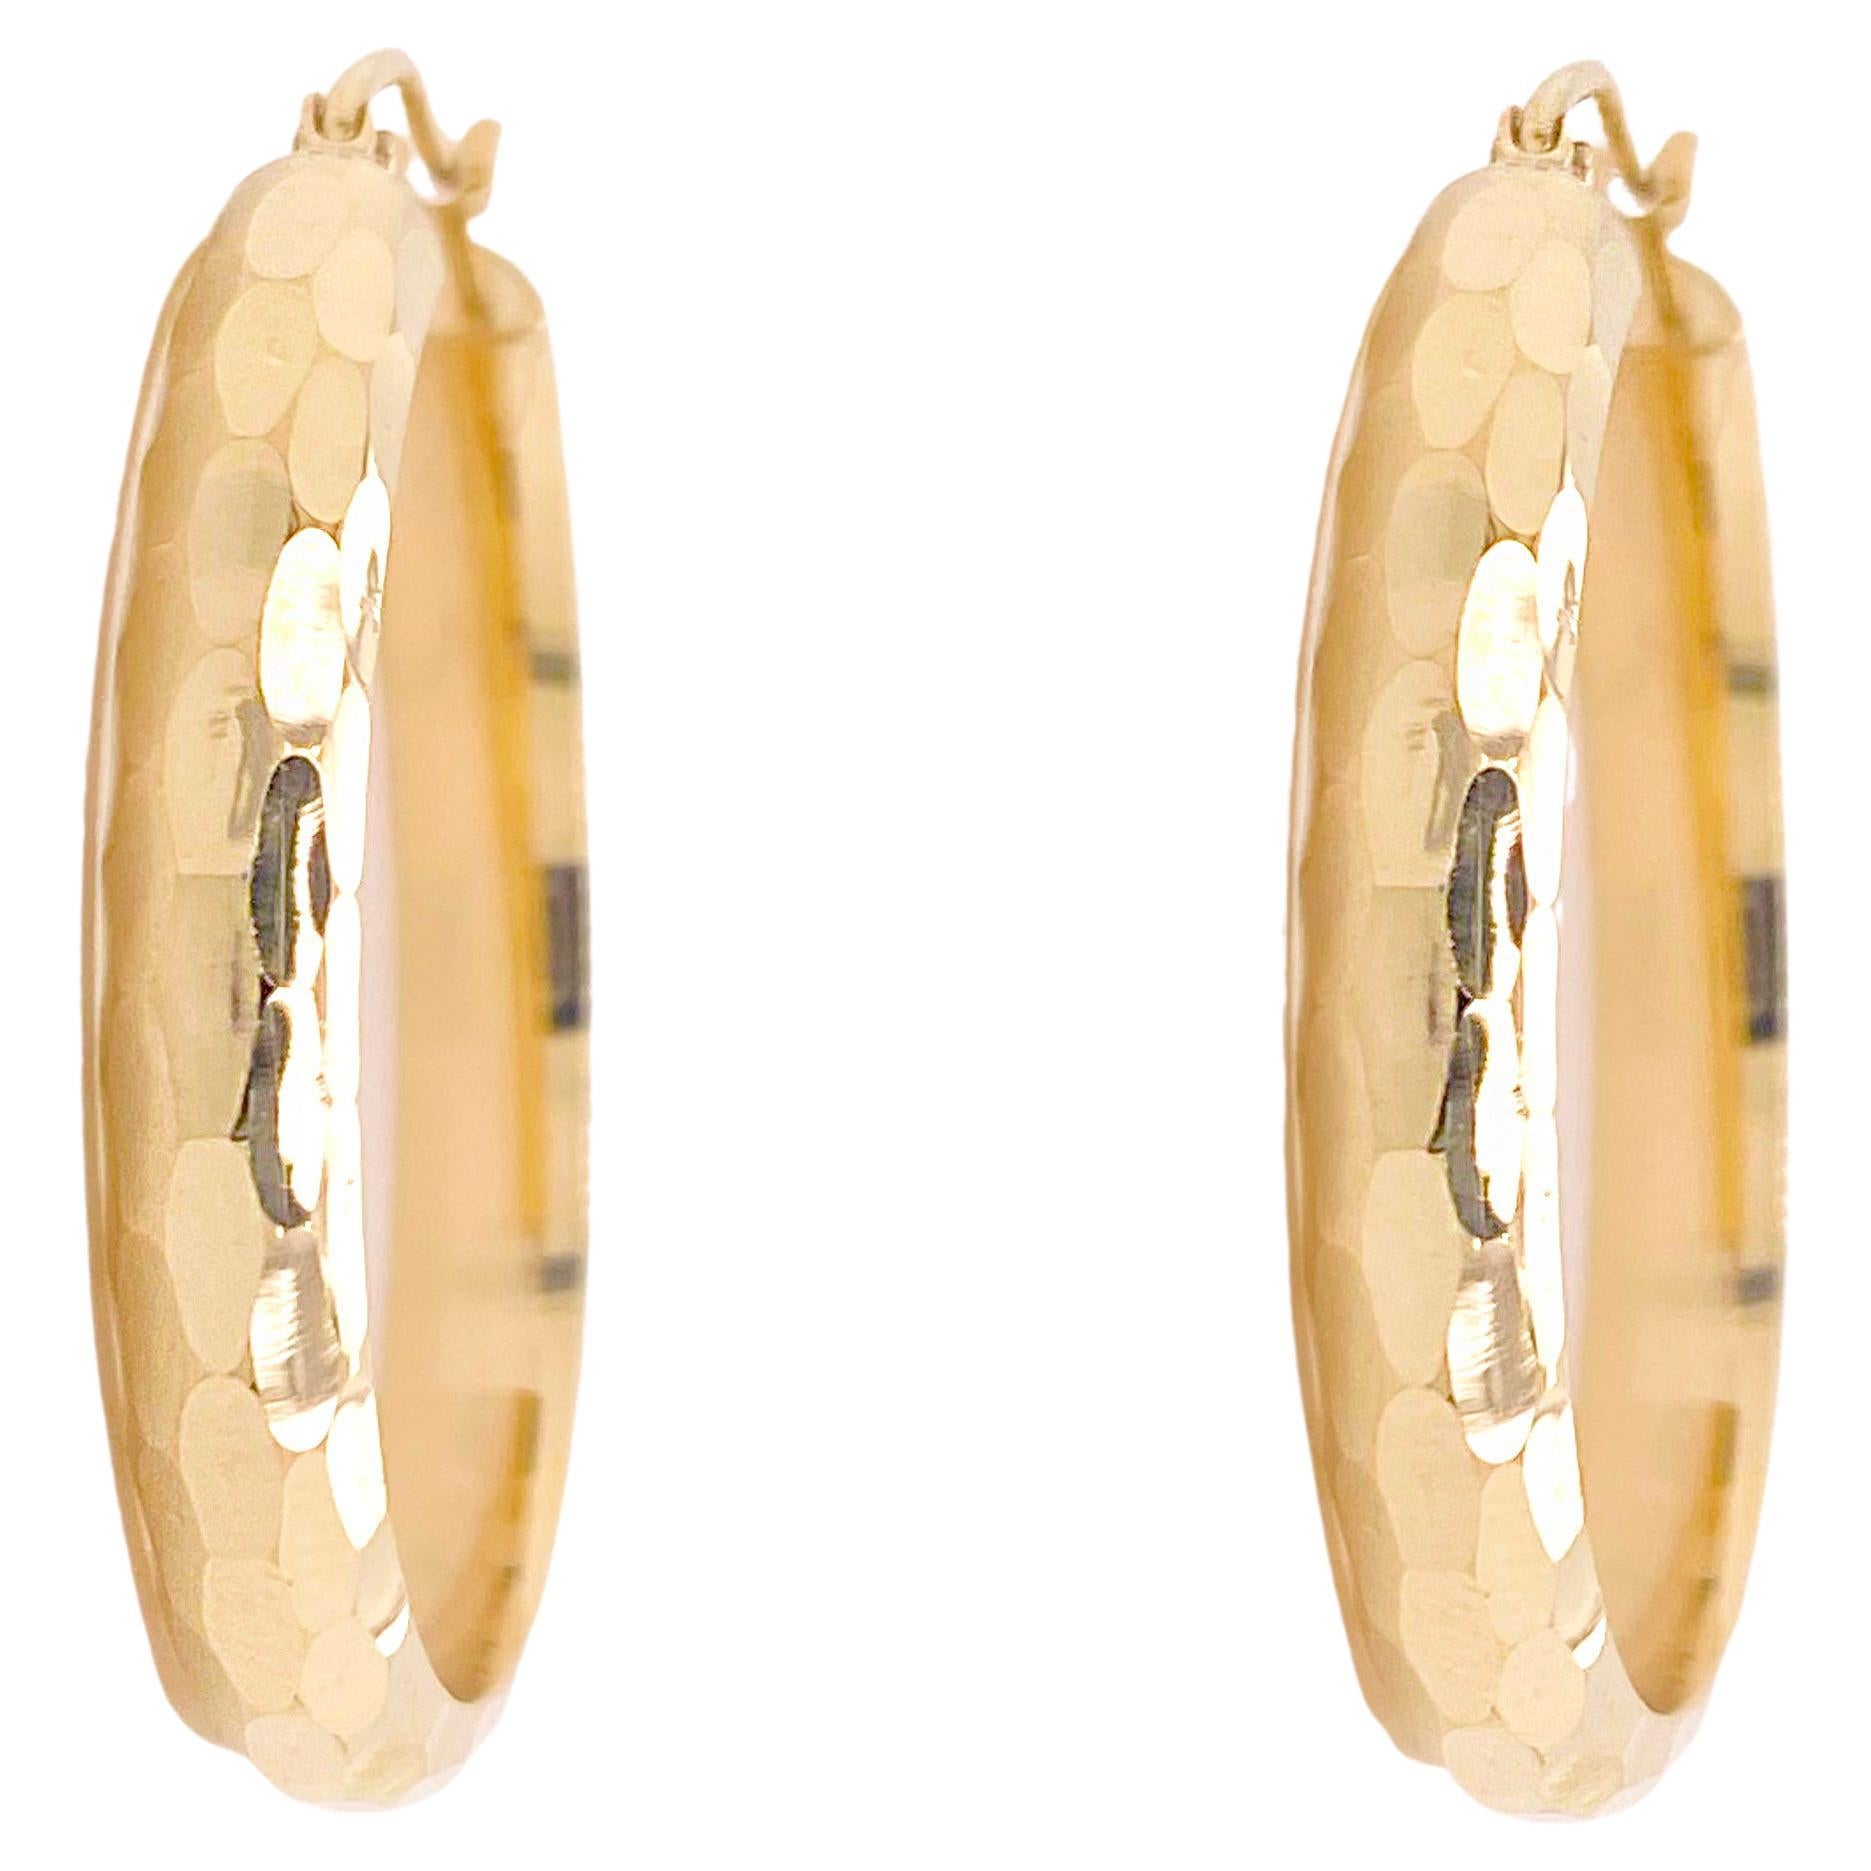 14k Yellow or White Gold 3 Millimeter Small Half Diamond Cut Hoop Earrings 15 Millimeter